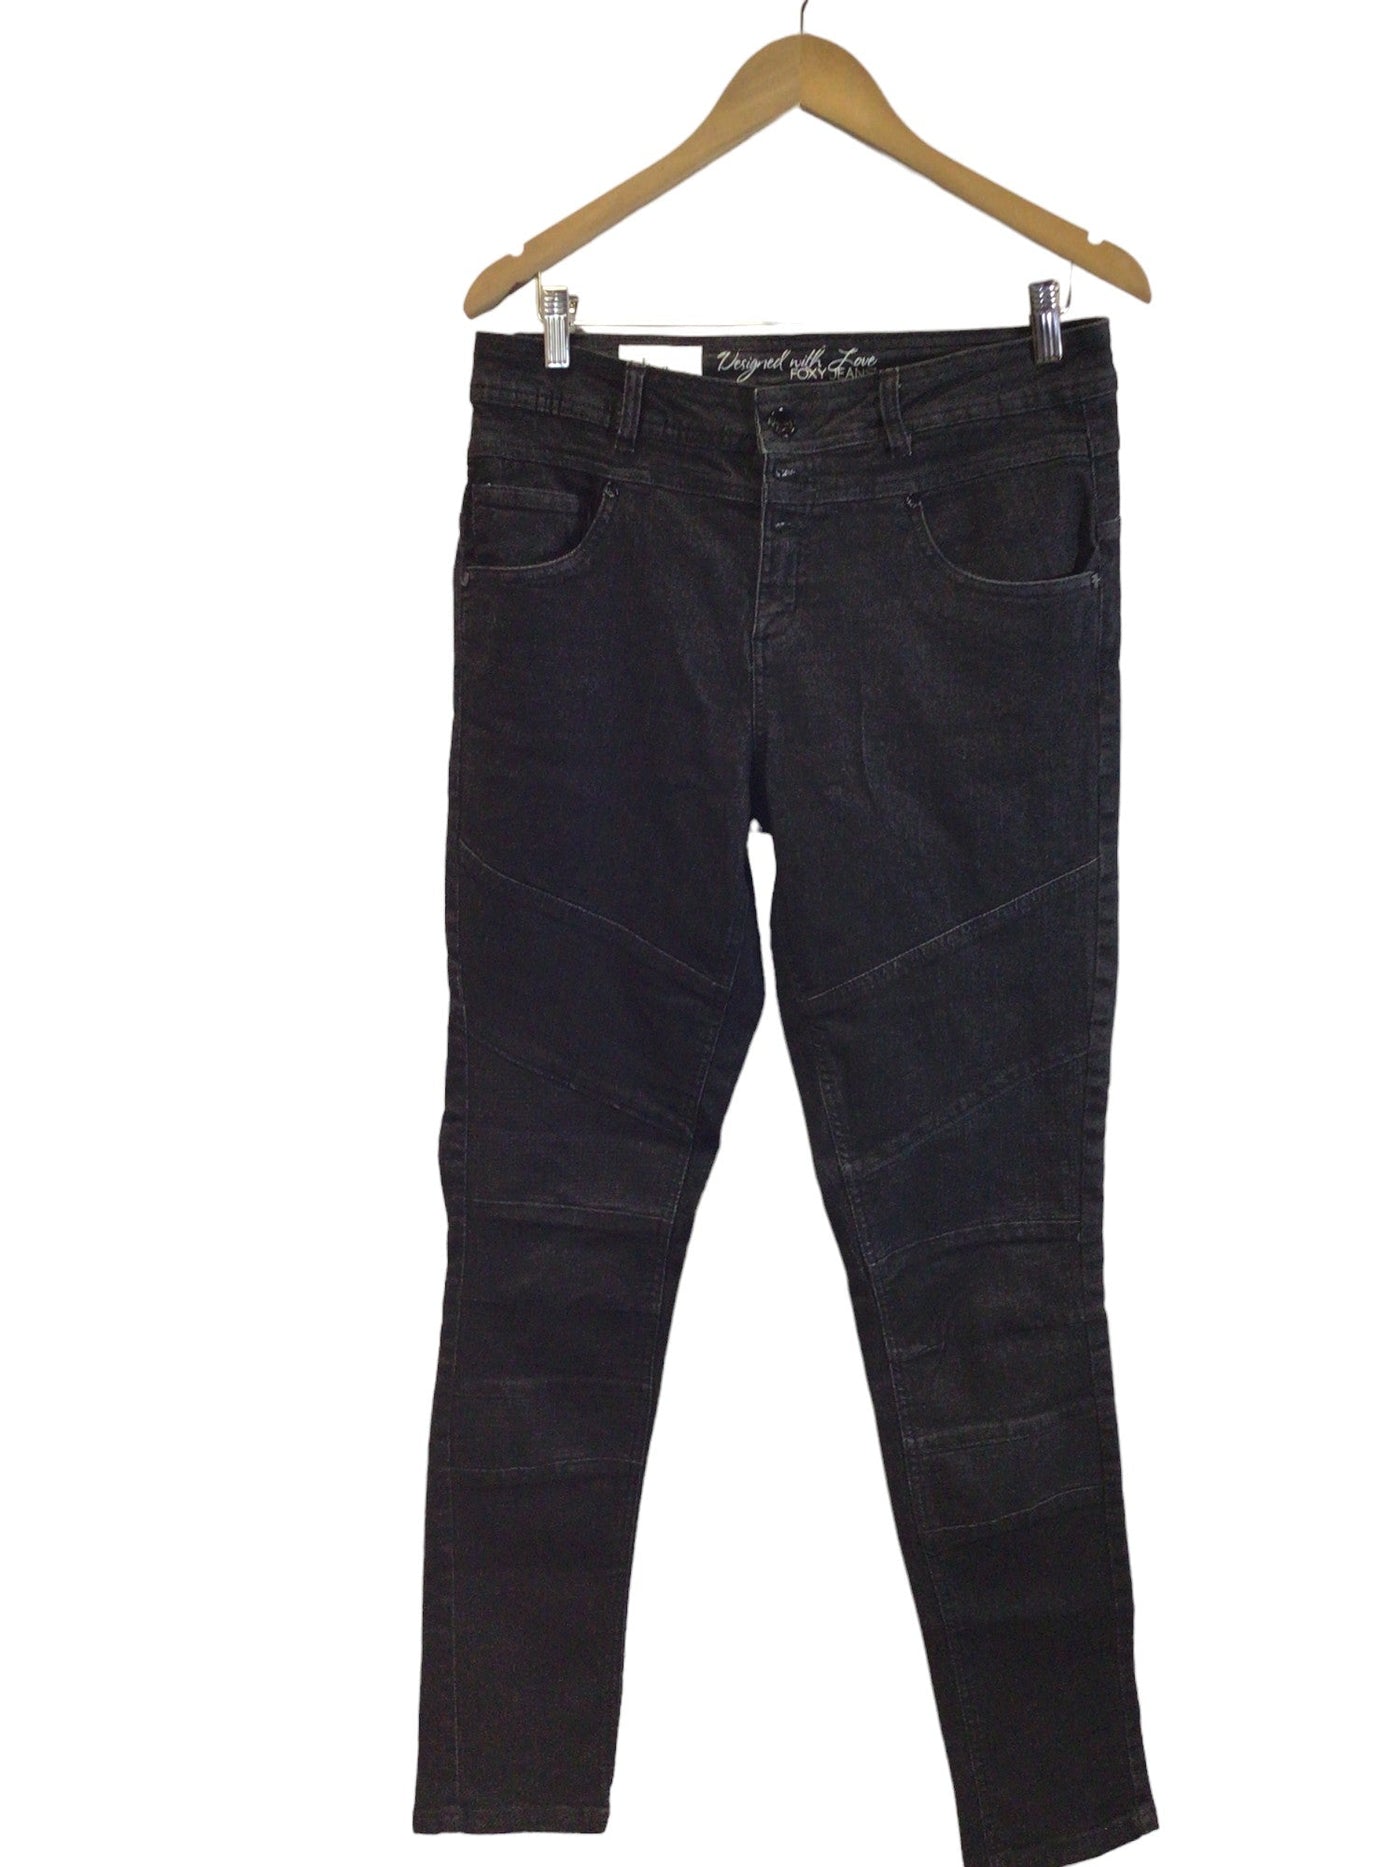 JEANIOLOGIE Women Straight-Legged Jeans Regular fit in Black - Size 32 | 10.29 $ KOOP